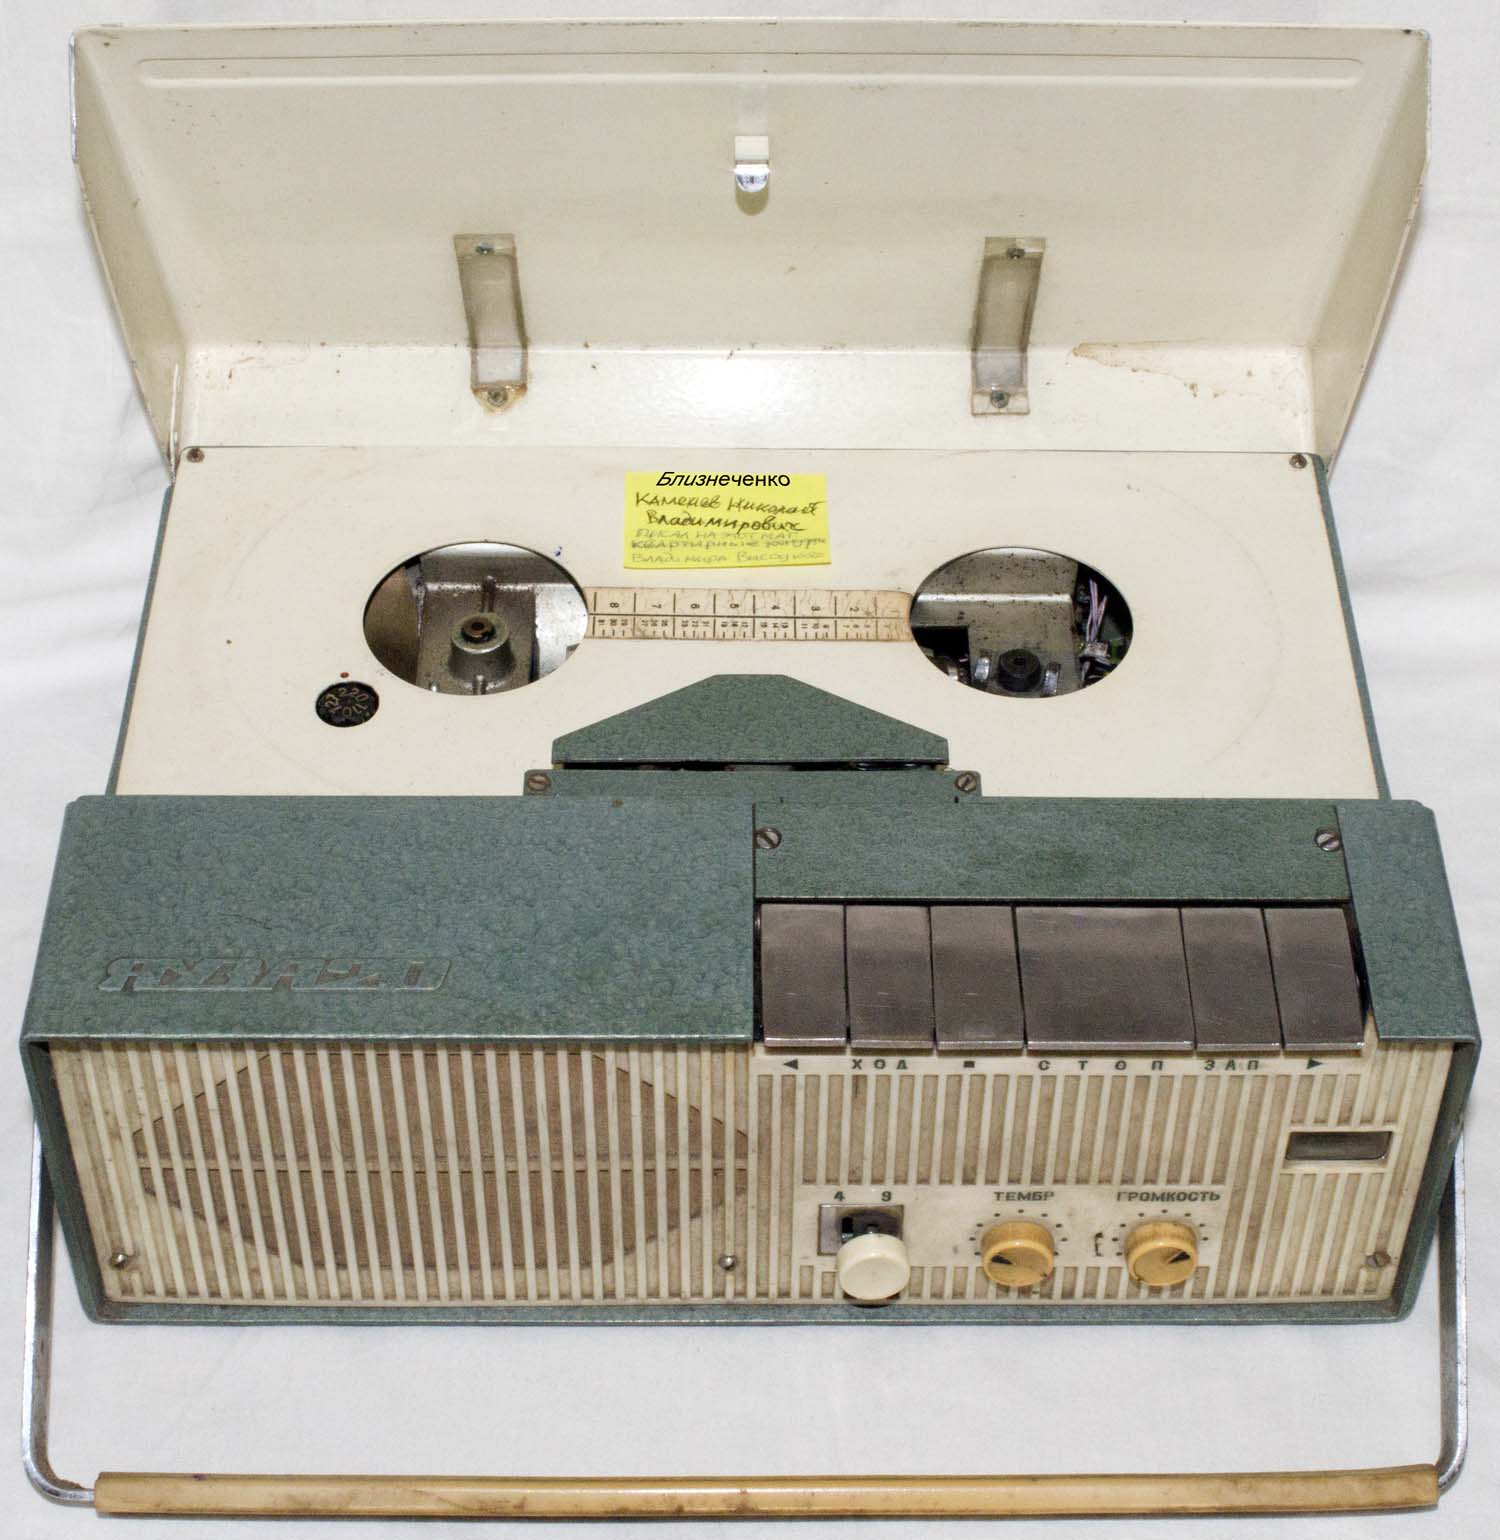 Монофонический катушечный мини магнитофон Яуза-20, который якобы принадлежал Владимиру Высоцкому